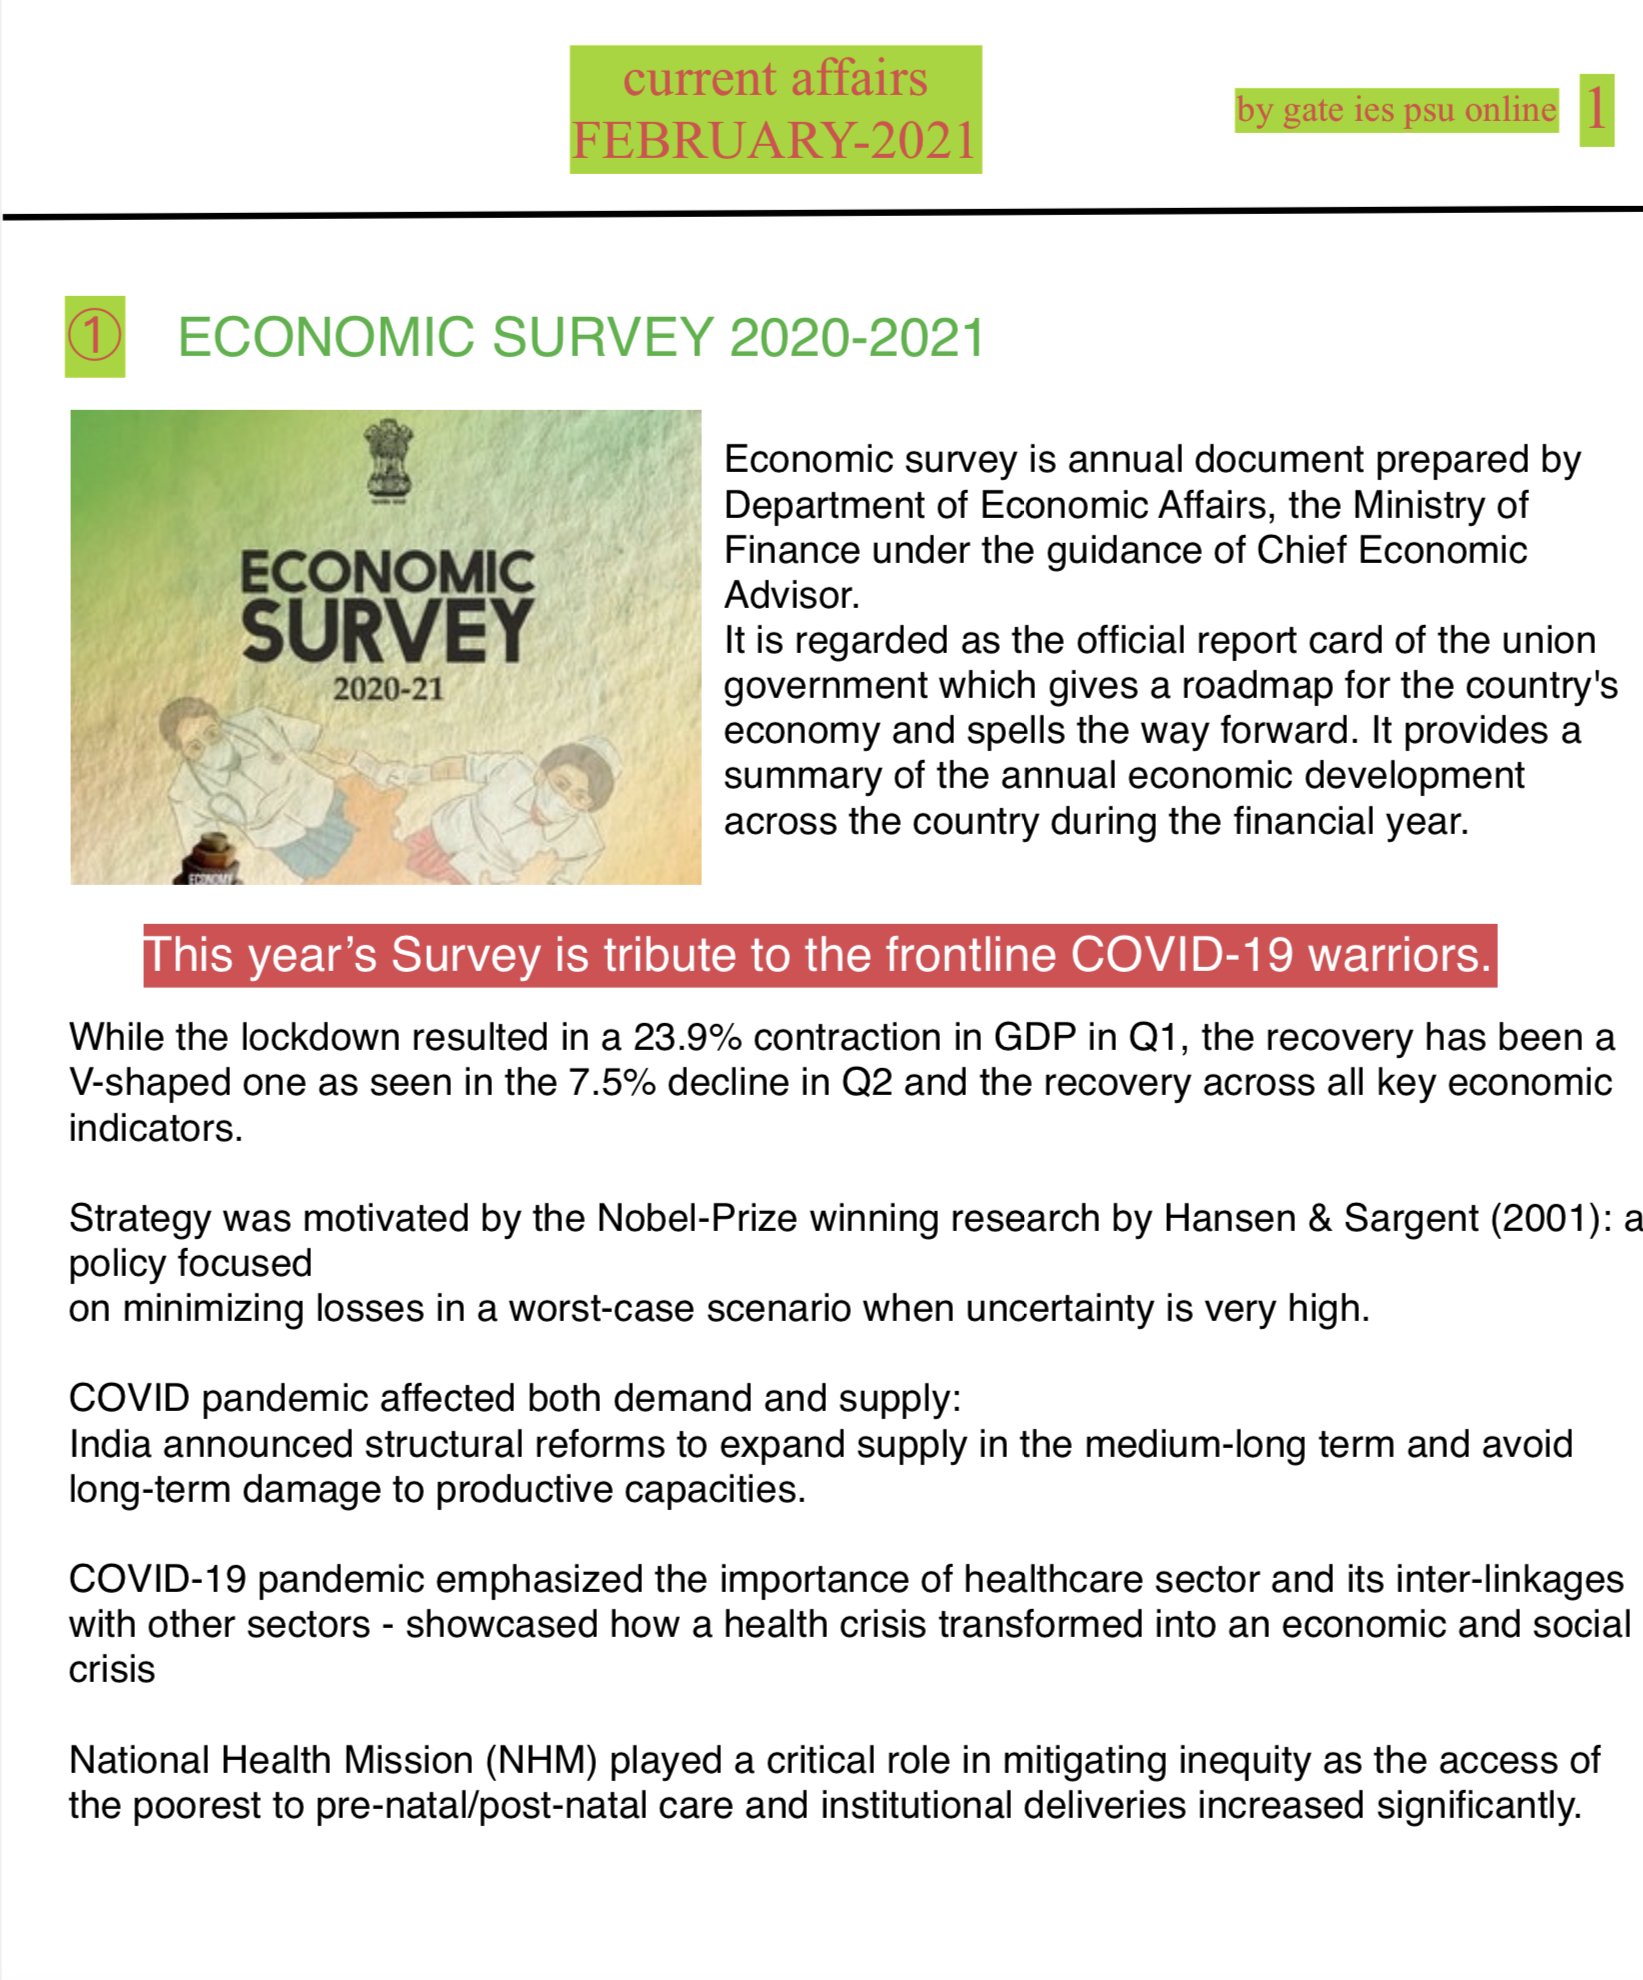  ECONOMIC SURVEY 2020-21 SUMMARY UPSC